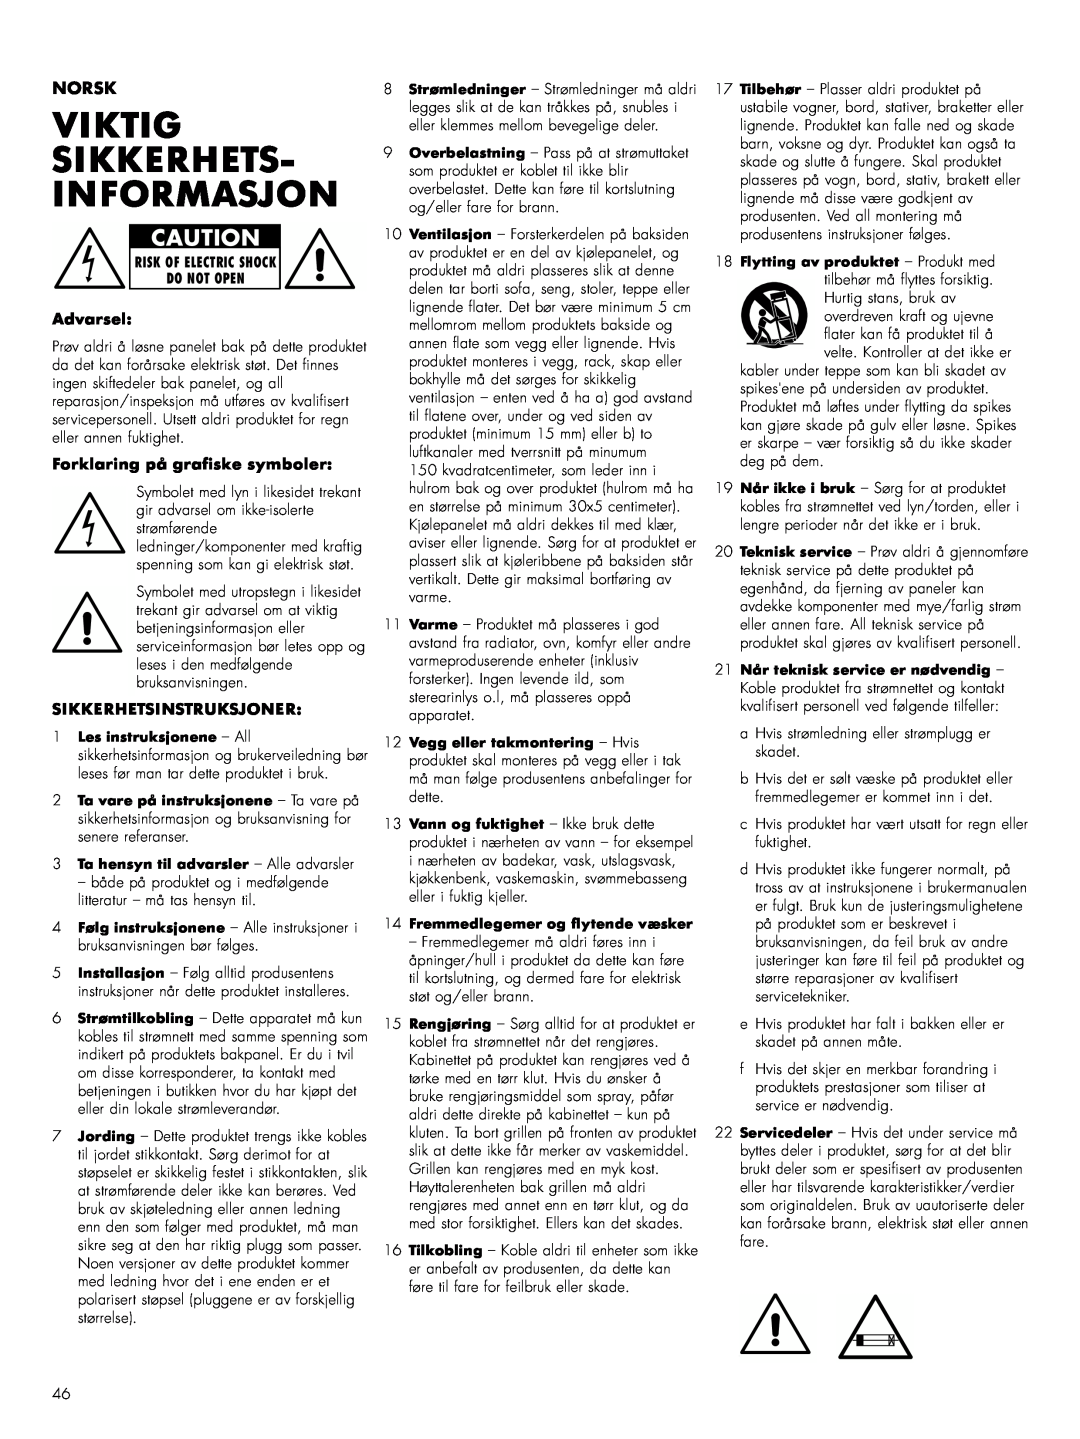 Bowers & Wilkins ASWCM owner manual Viktig Sikkerhets- Informasjon, Norsk, Advarsel, Forklaring på grafiske symboler 